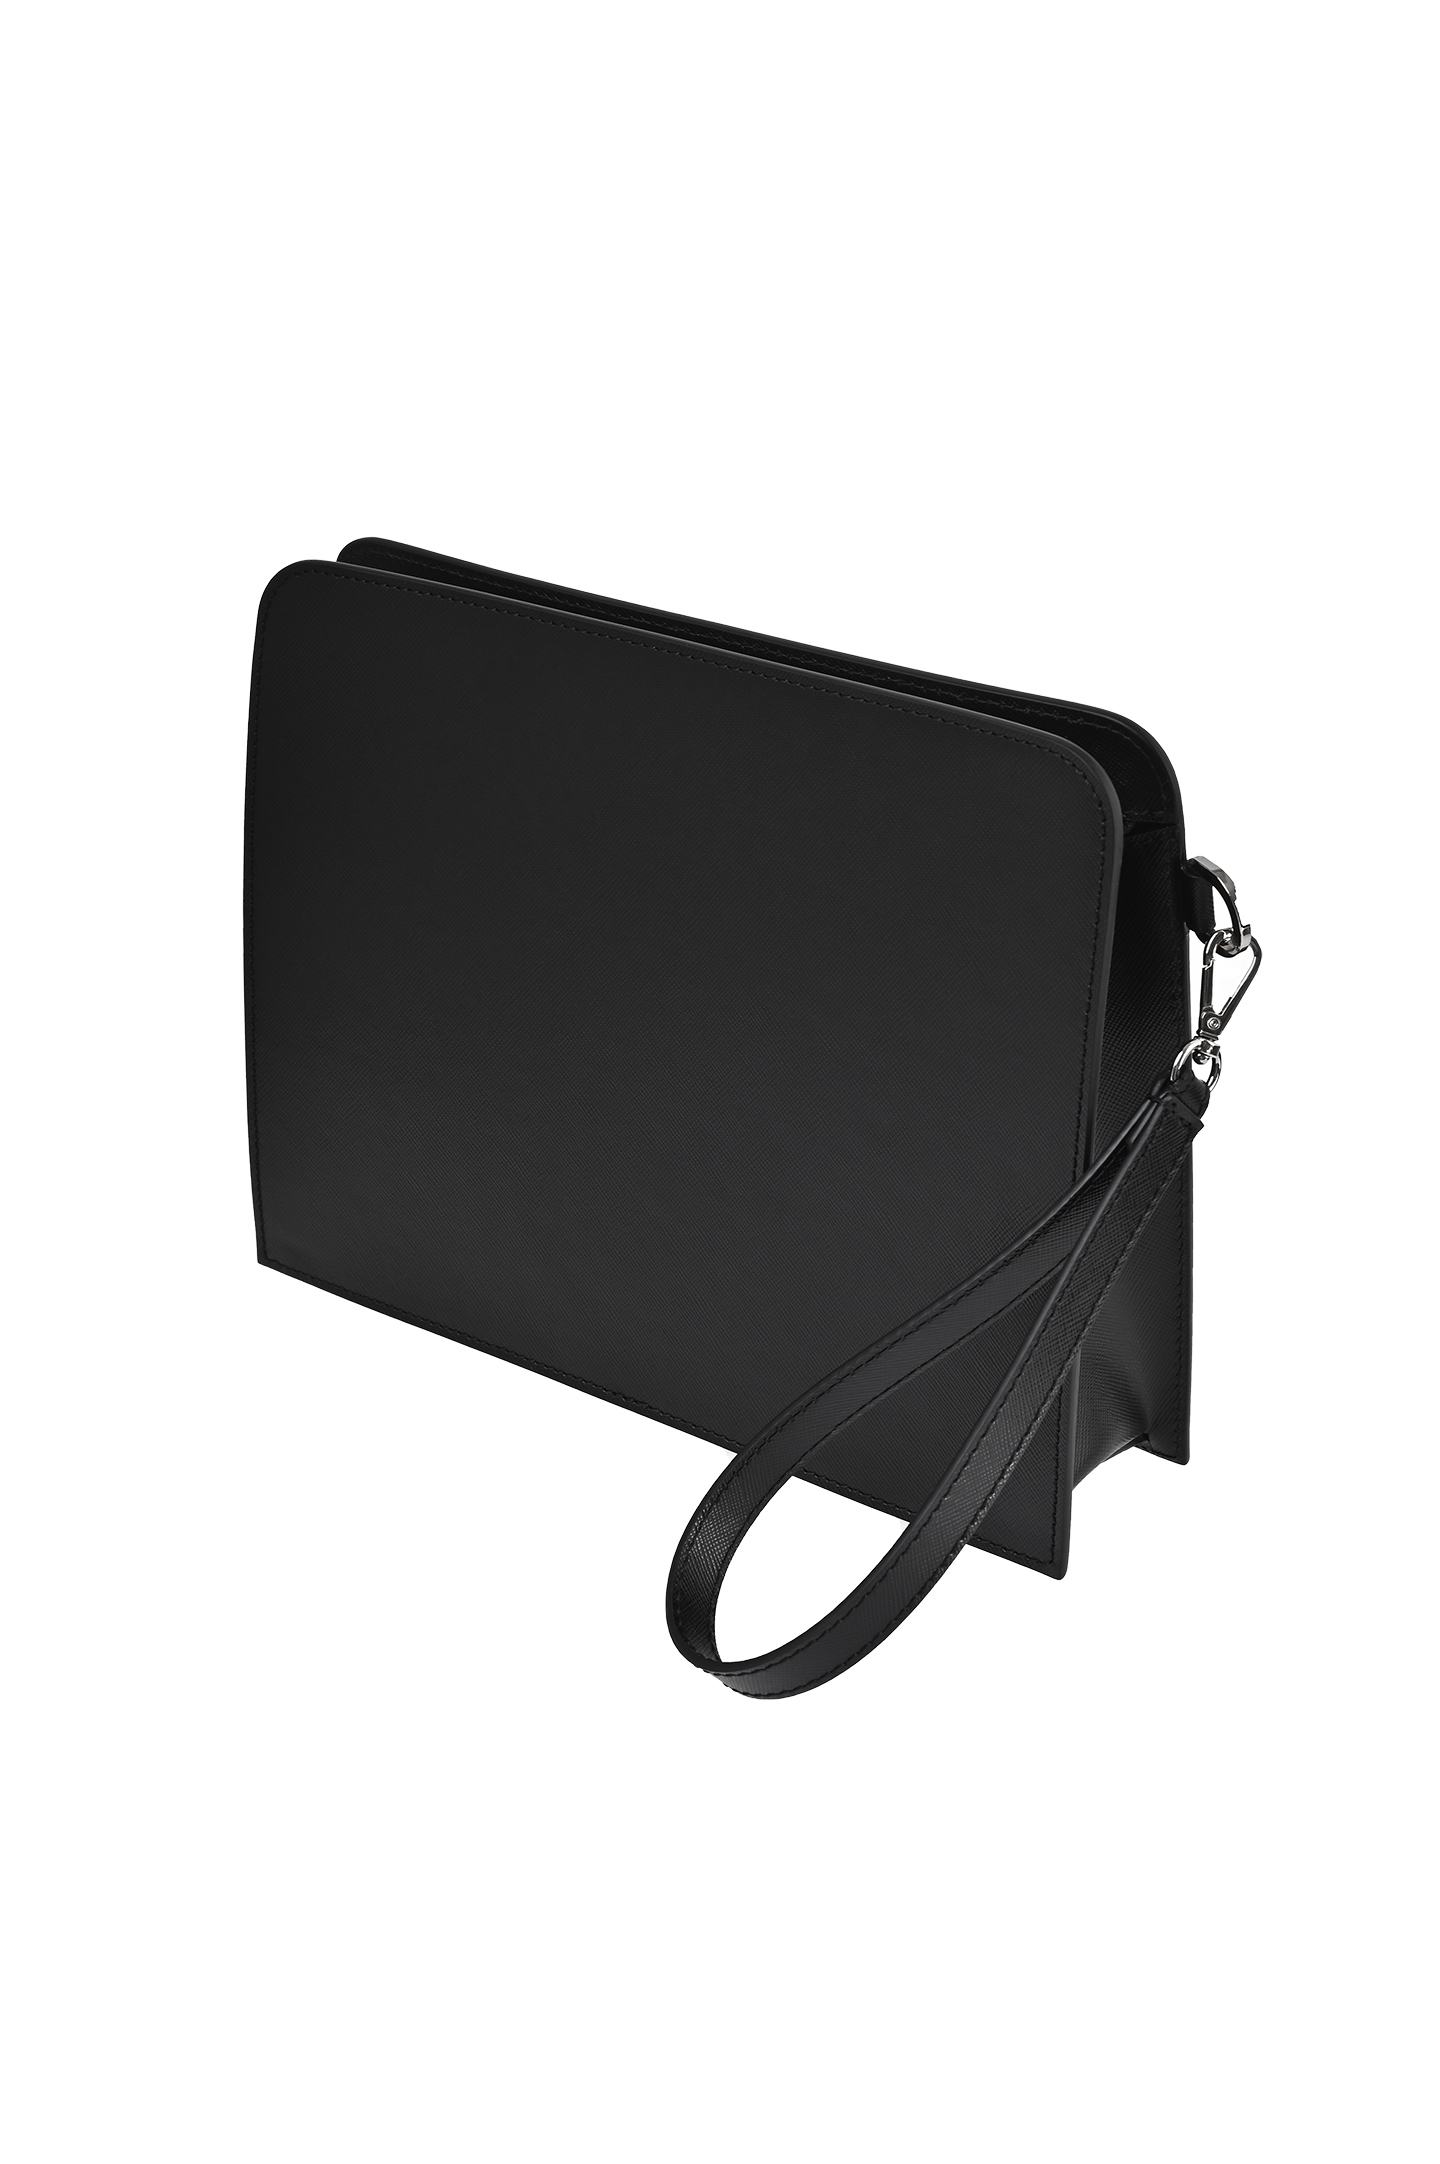 Кожаное портмоне для документов KITON UBA0010N010030, цвет: Черный, Мужской